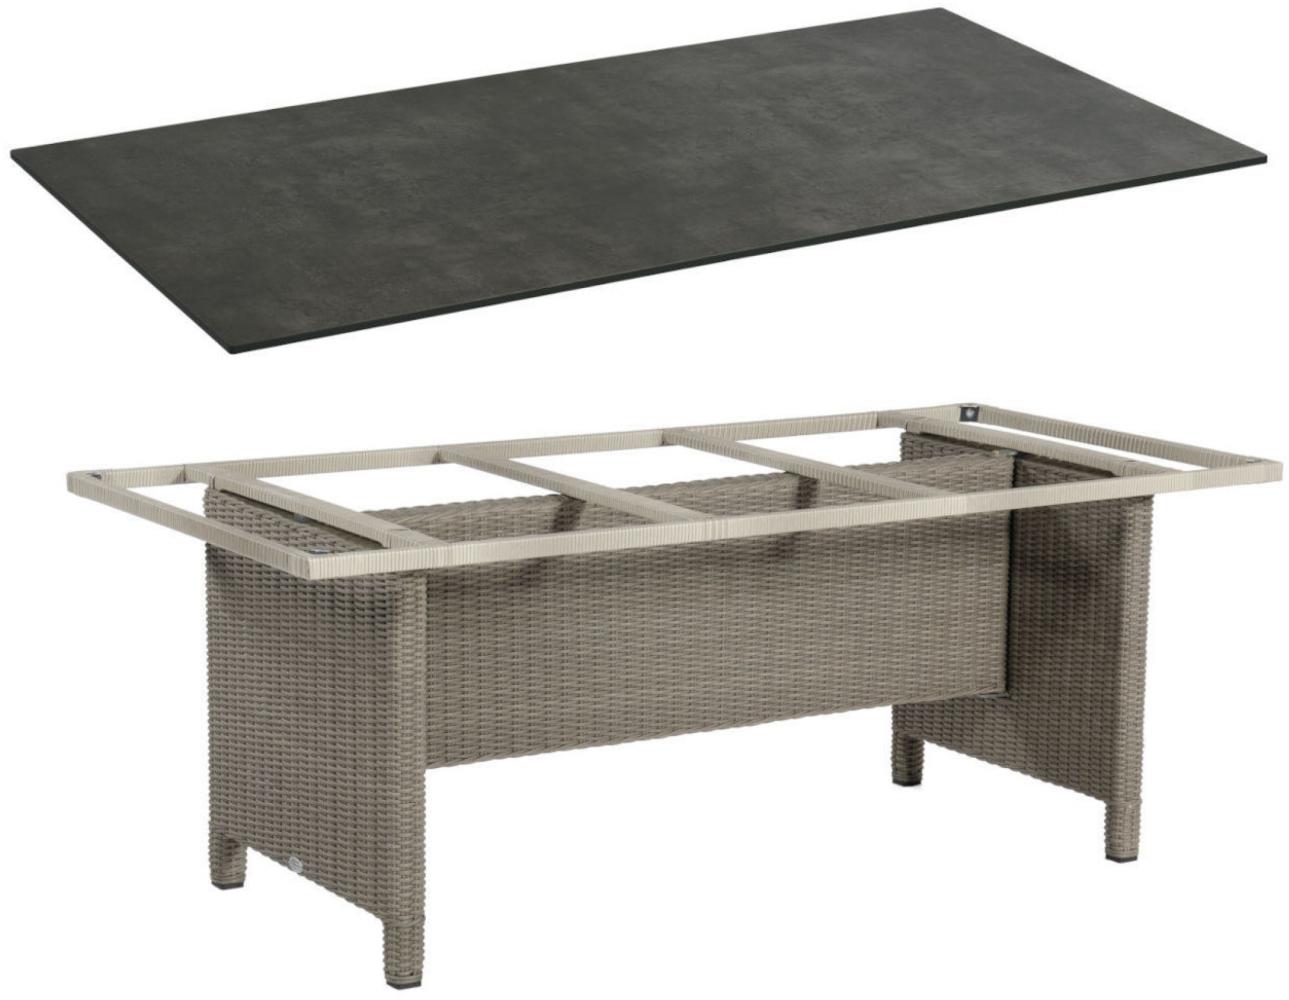 Sonnenpartner Gartentisch Base 200x100 cm Polyrattan stone-grey Tischsystem Tischplatte Compact HPL Keramikoptik 80050517 Bild 1